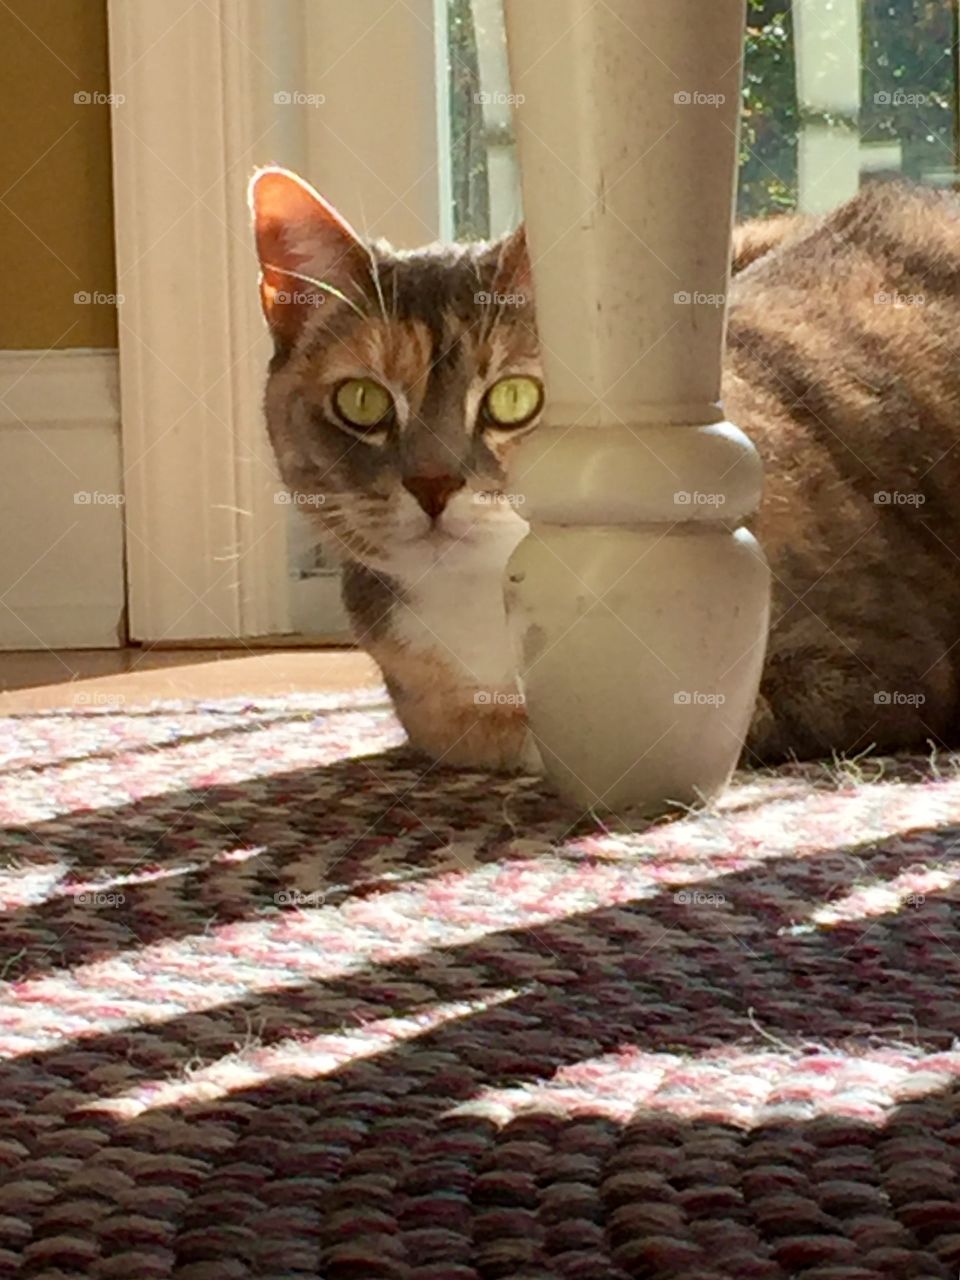 Cat in the sun spot 